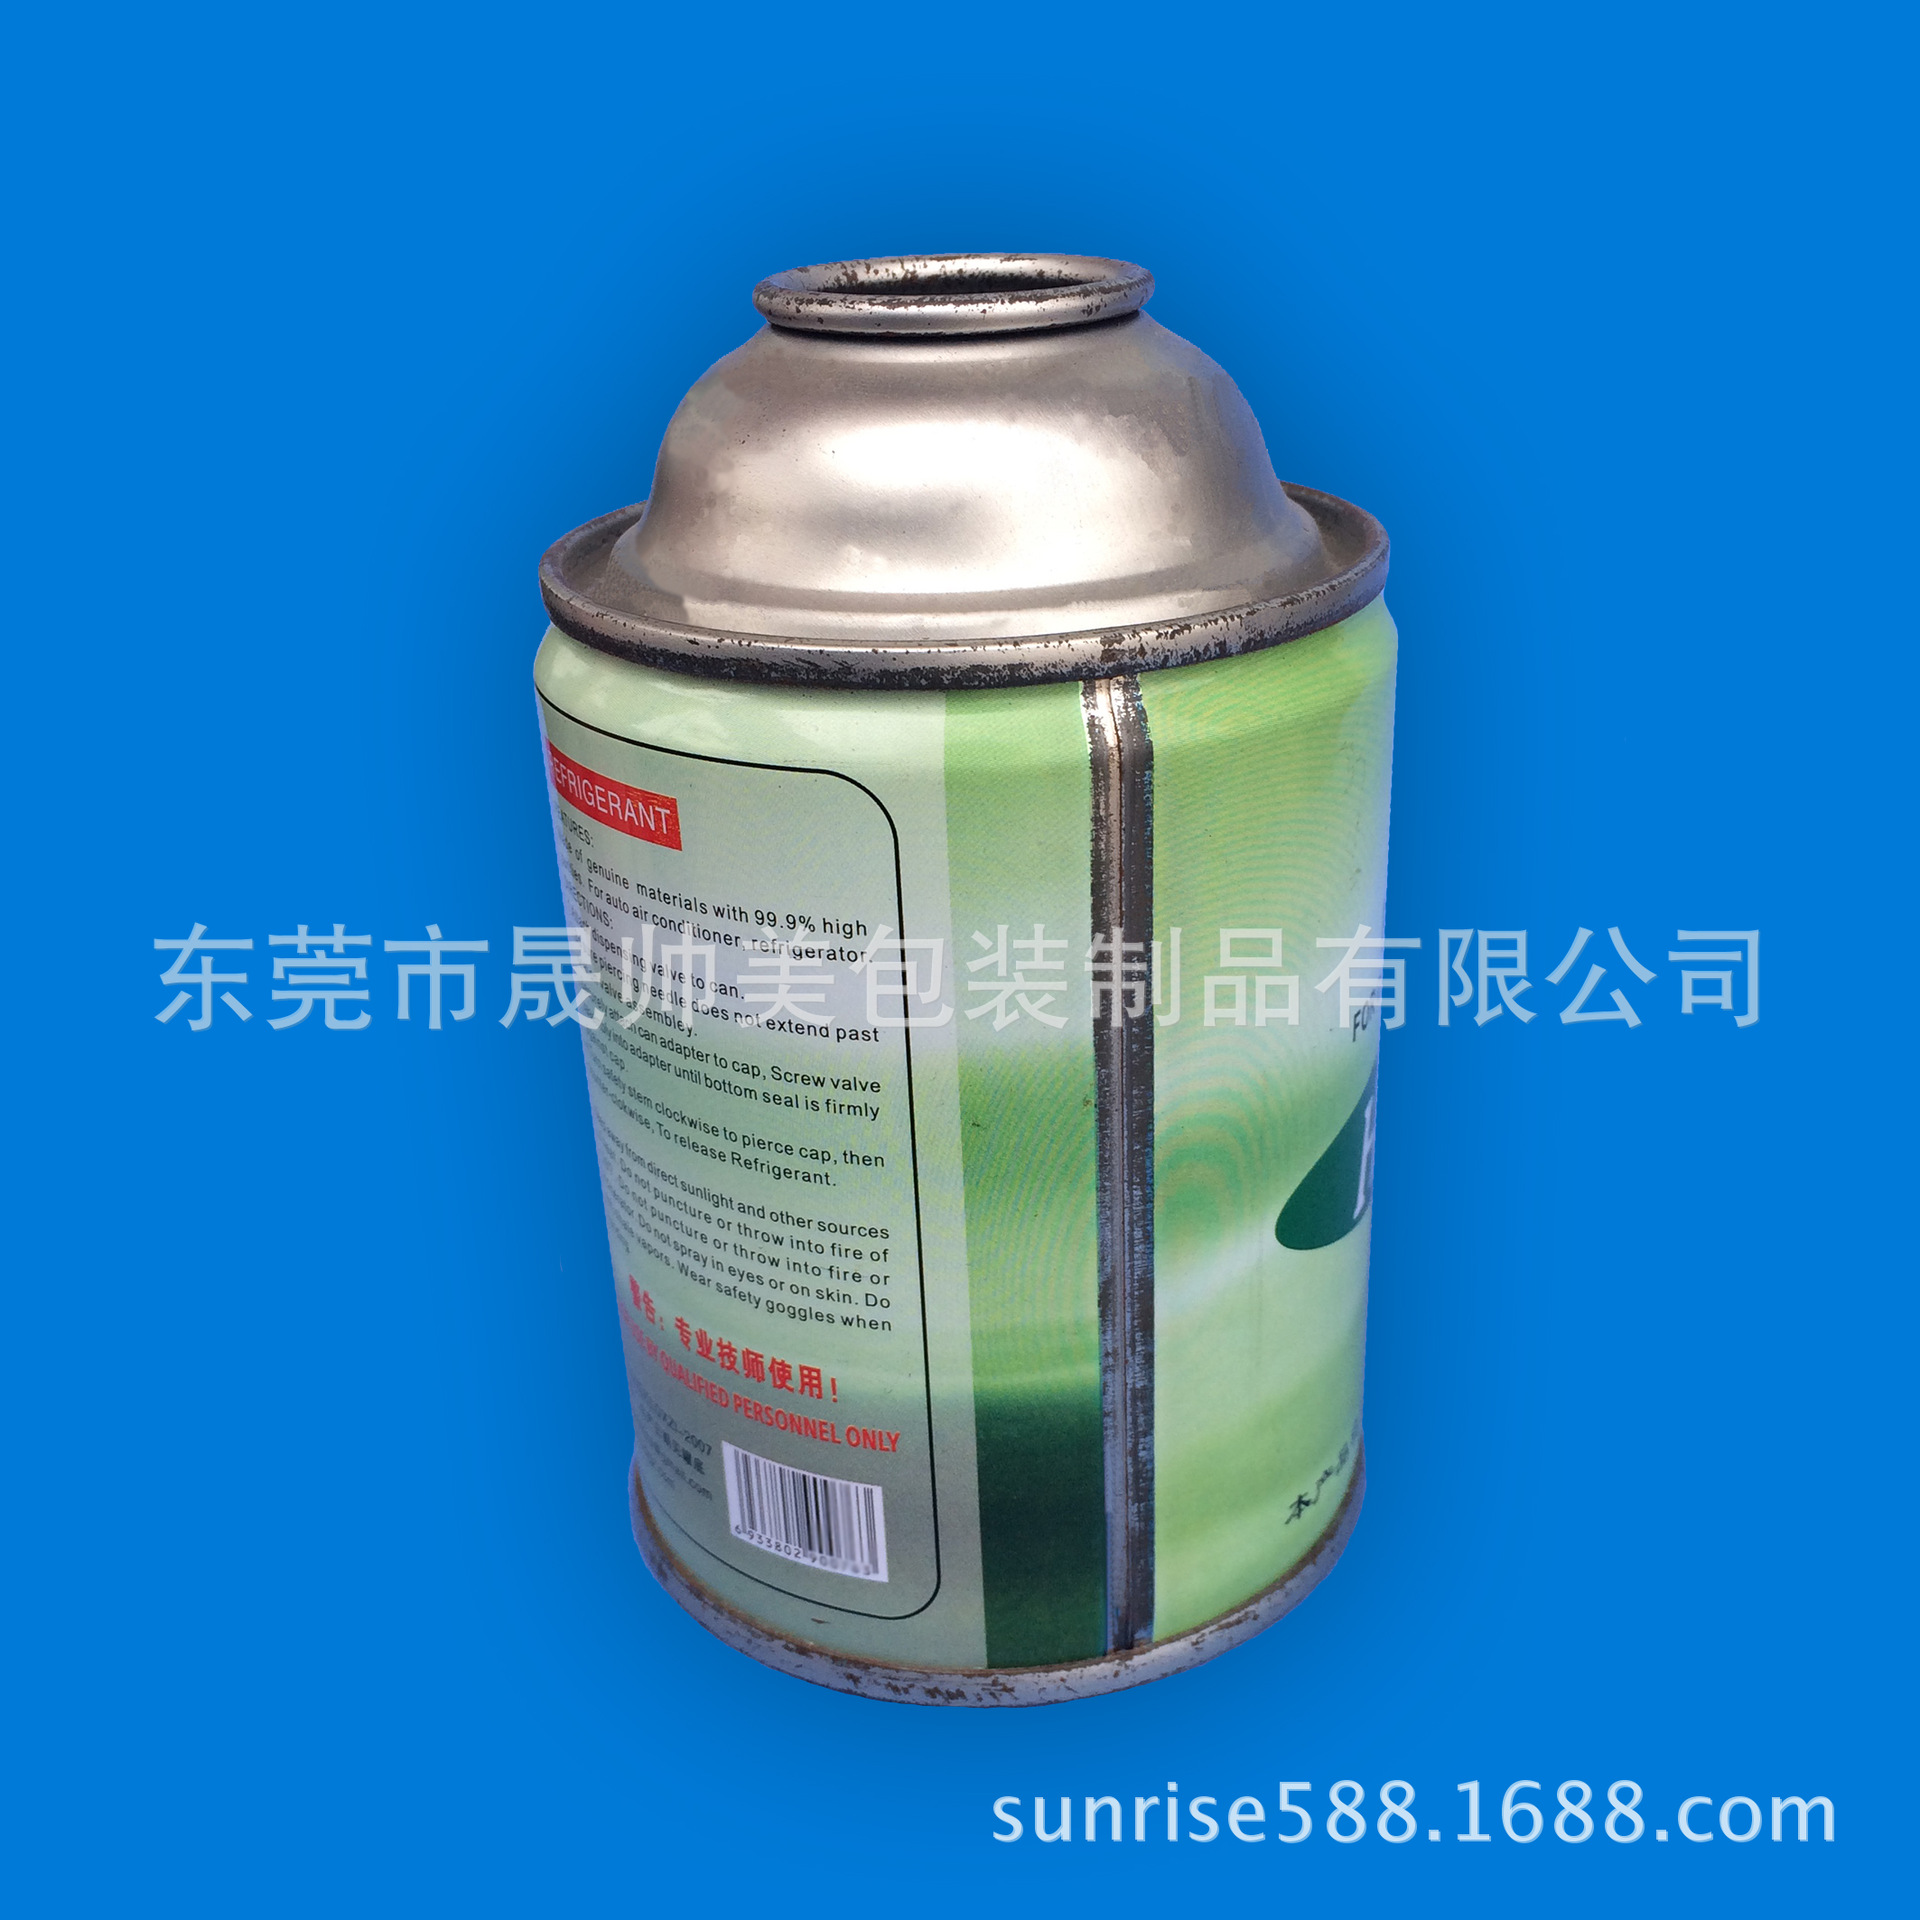 冷媒铁罐 非标雪种气雾罐 燃油添加剂罐 马口铁喷雾罐 缩颈高压罐